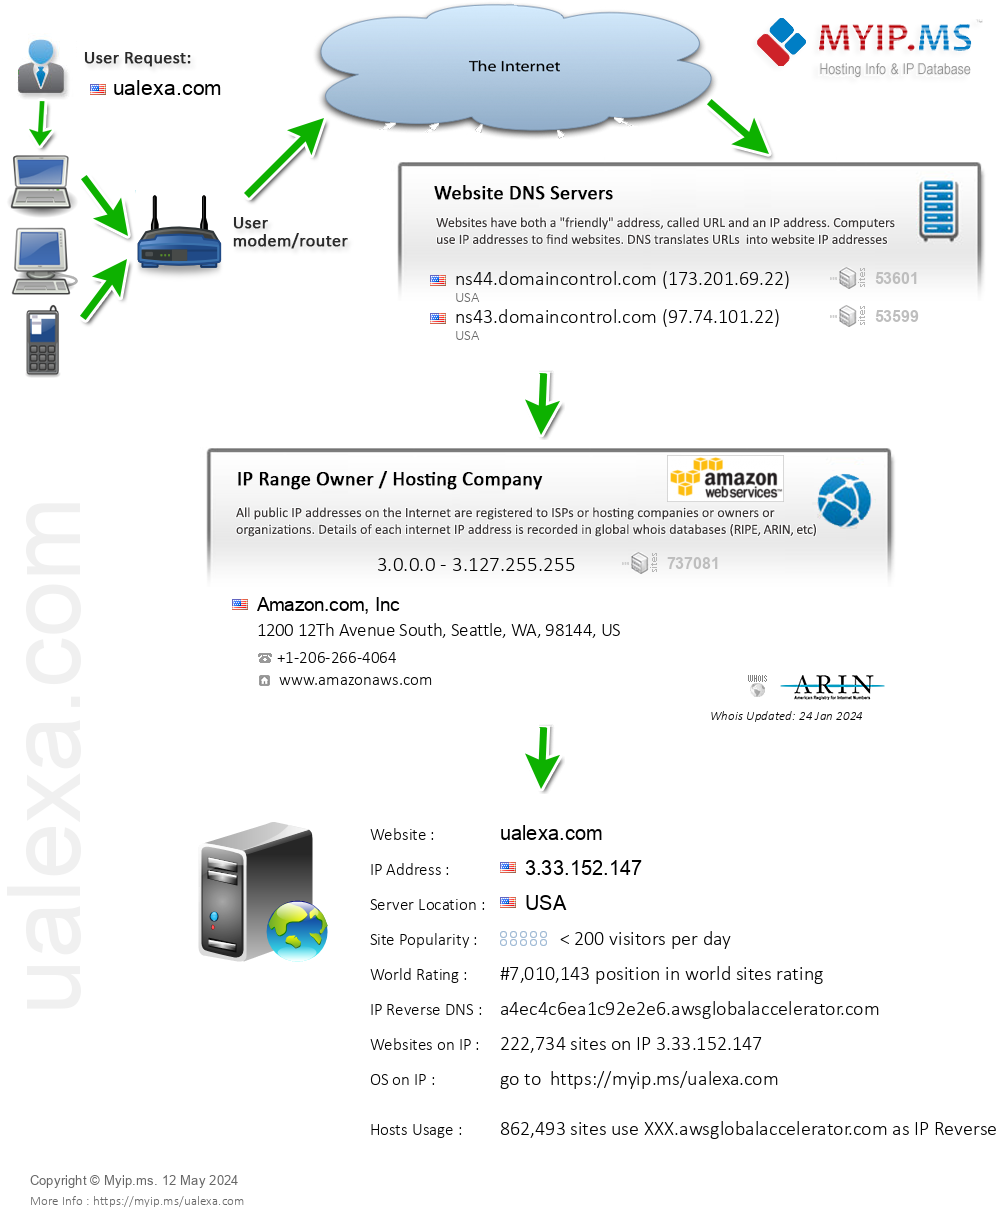 Ualexa.com - Website Hosting Visual IP Diagram